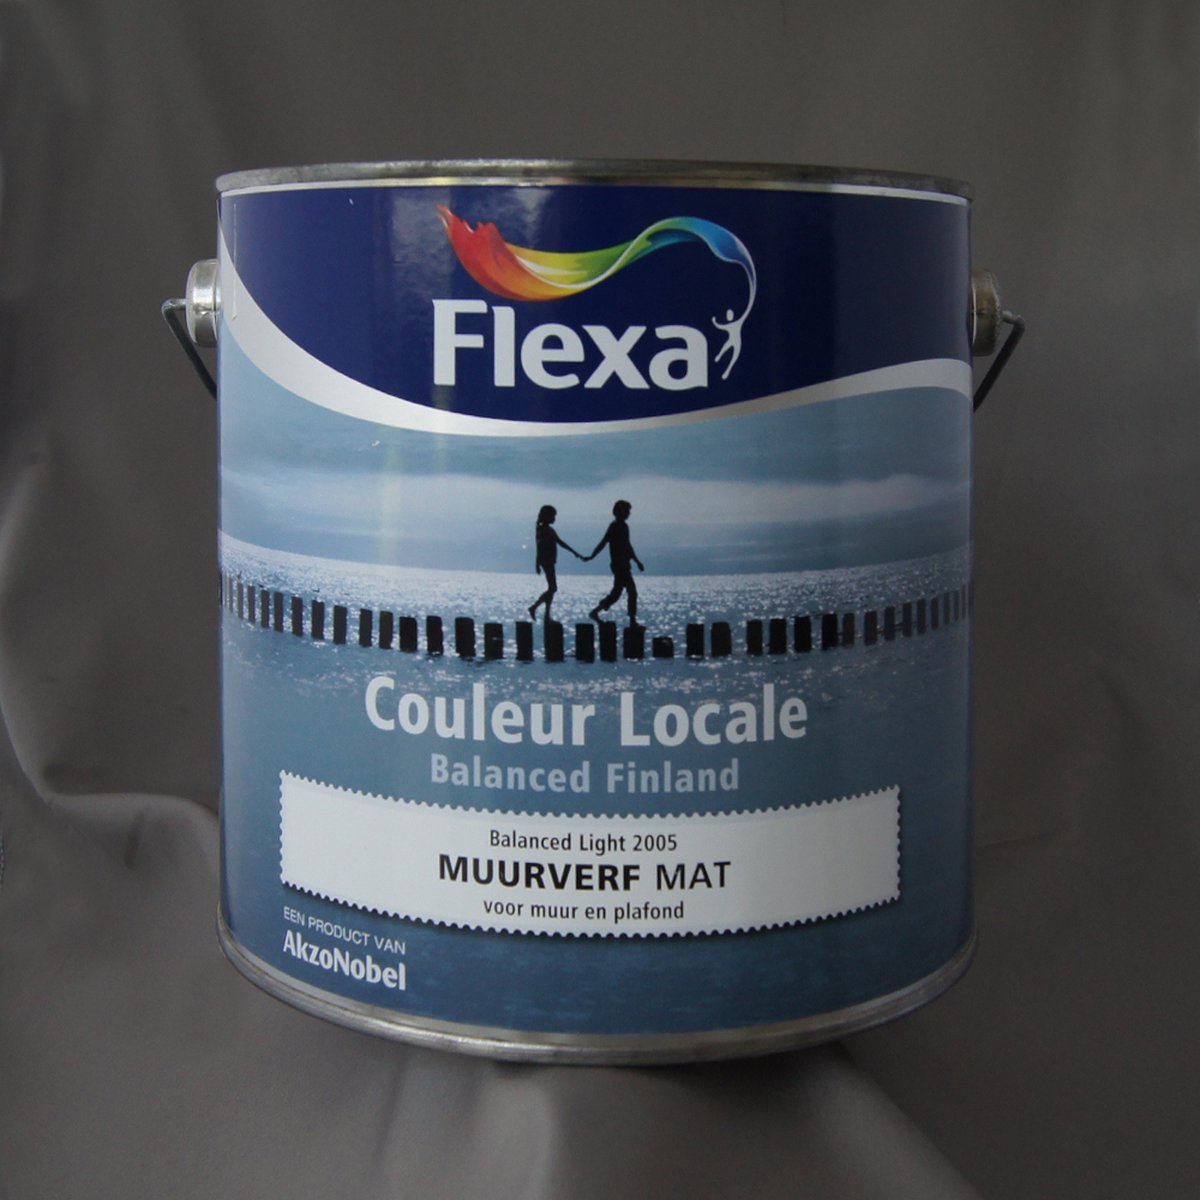 Flexa Couleur Locale - Muurverf Mat - Balanced Finland Light - 2005 - 2,5 liter